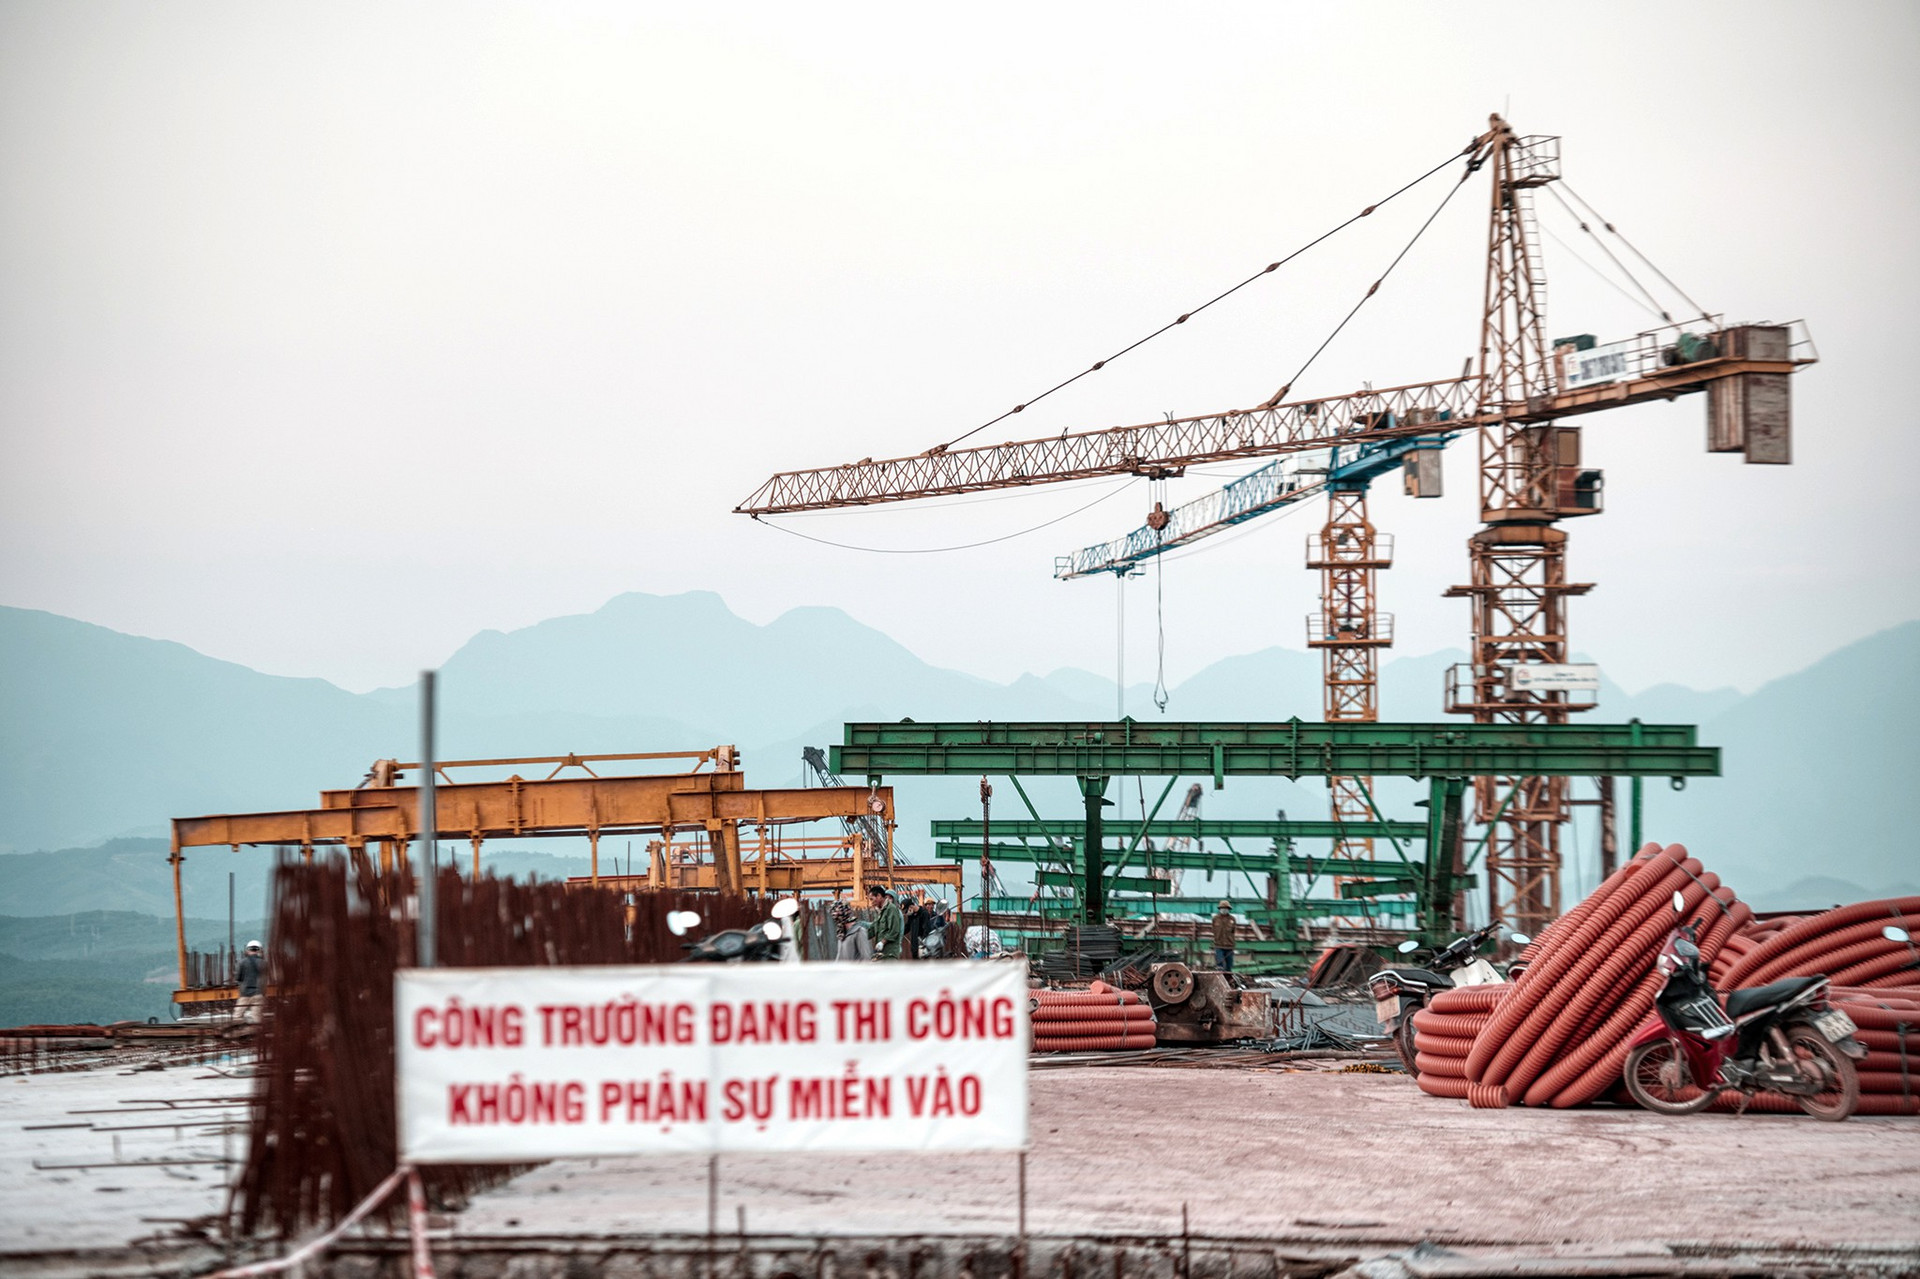 Cận cảnh cầu vượt biển dài 1.500m vừa hợp long ở Quảng Ninh - 9